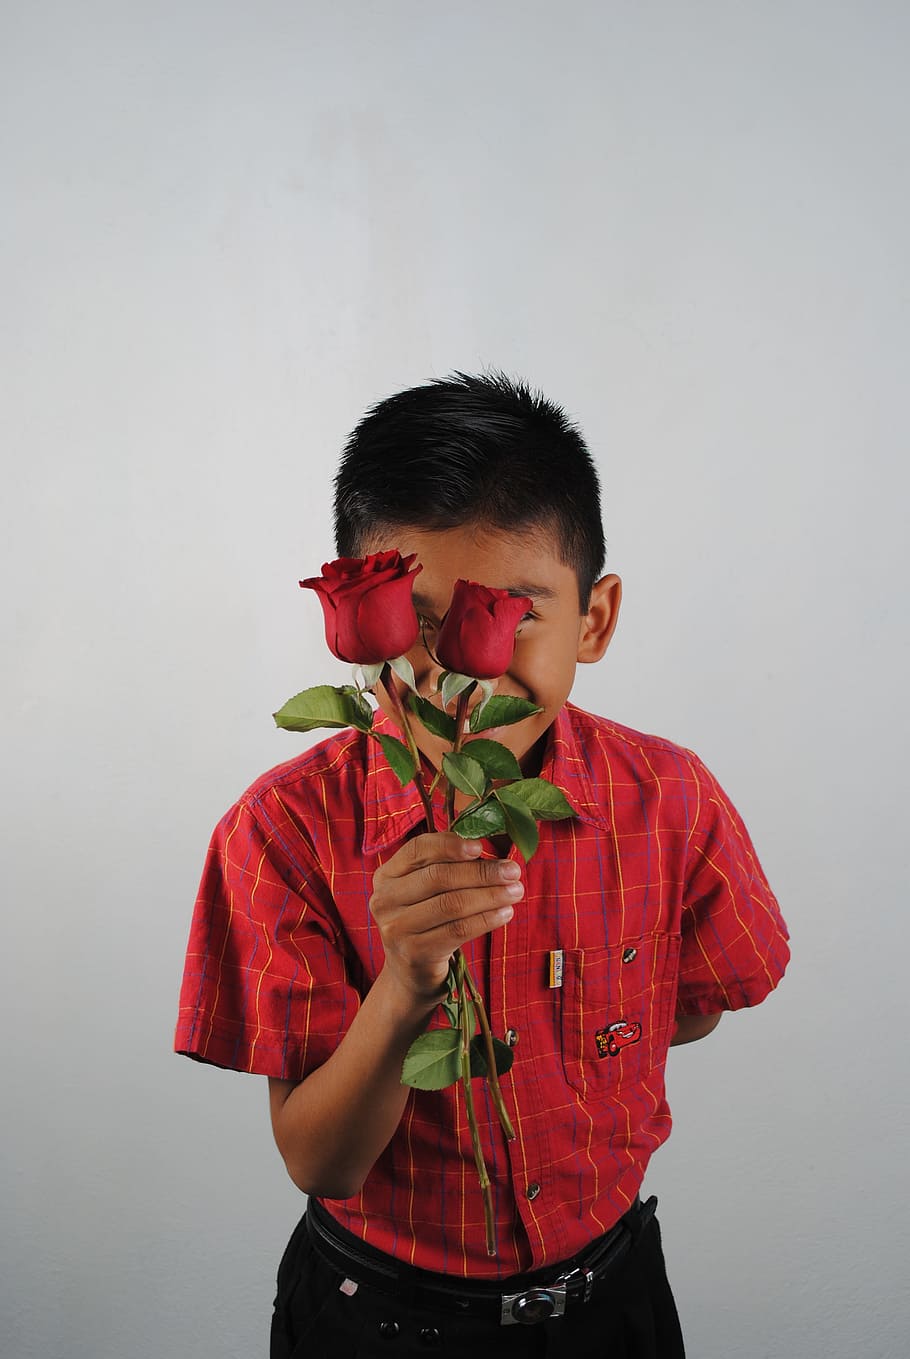 赤いバラ, 赤, 子供, 一人, 男の子, 正面図, 子供時代, 立っている, 屋内, カジュアルな服装